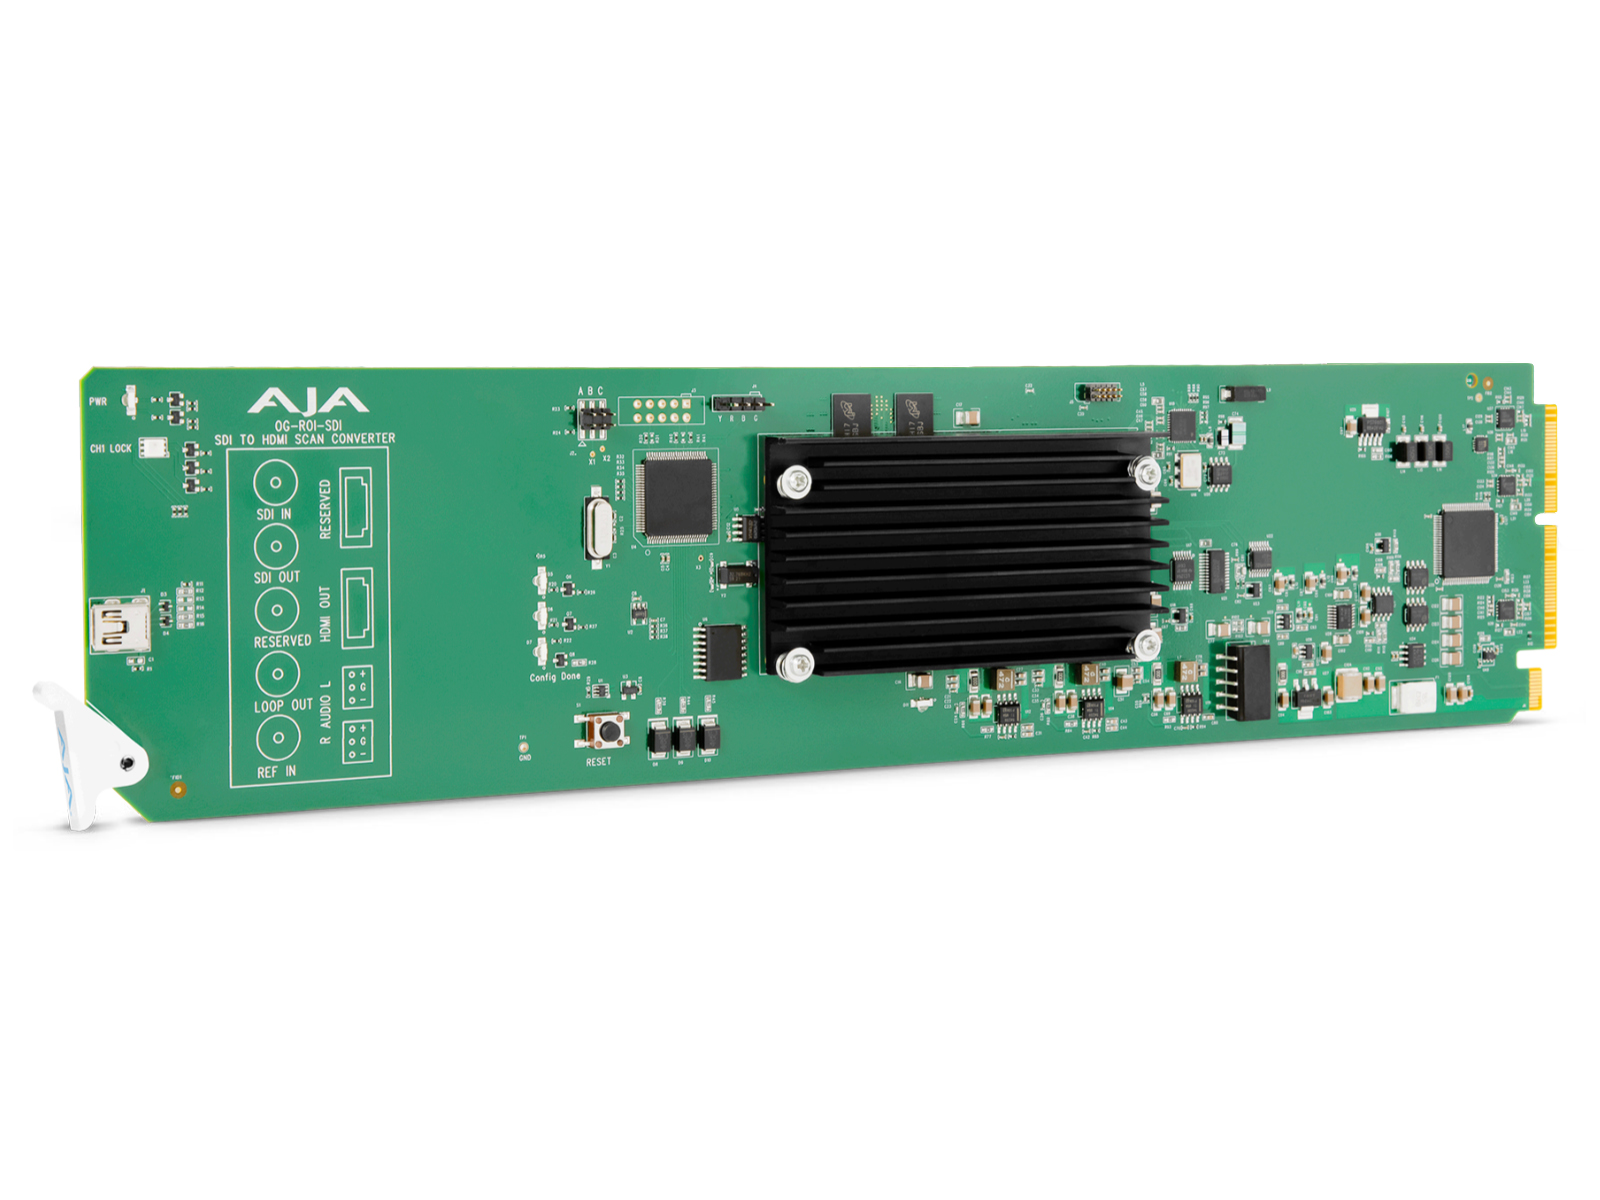 OG-ROI-SDI openGear 3G-SDI to 3G-SDI/HDMI Scan Converter by AJA